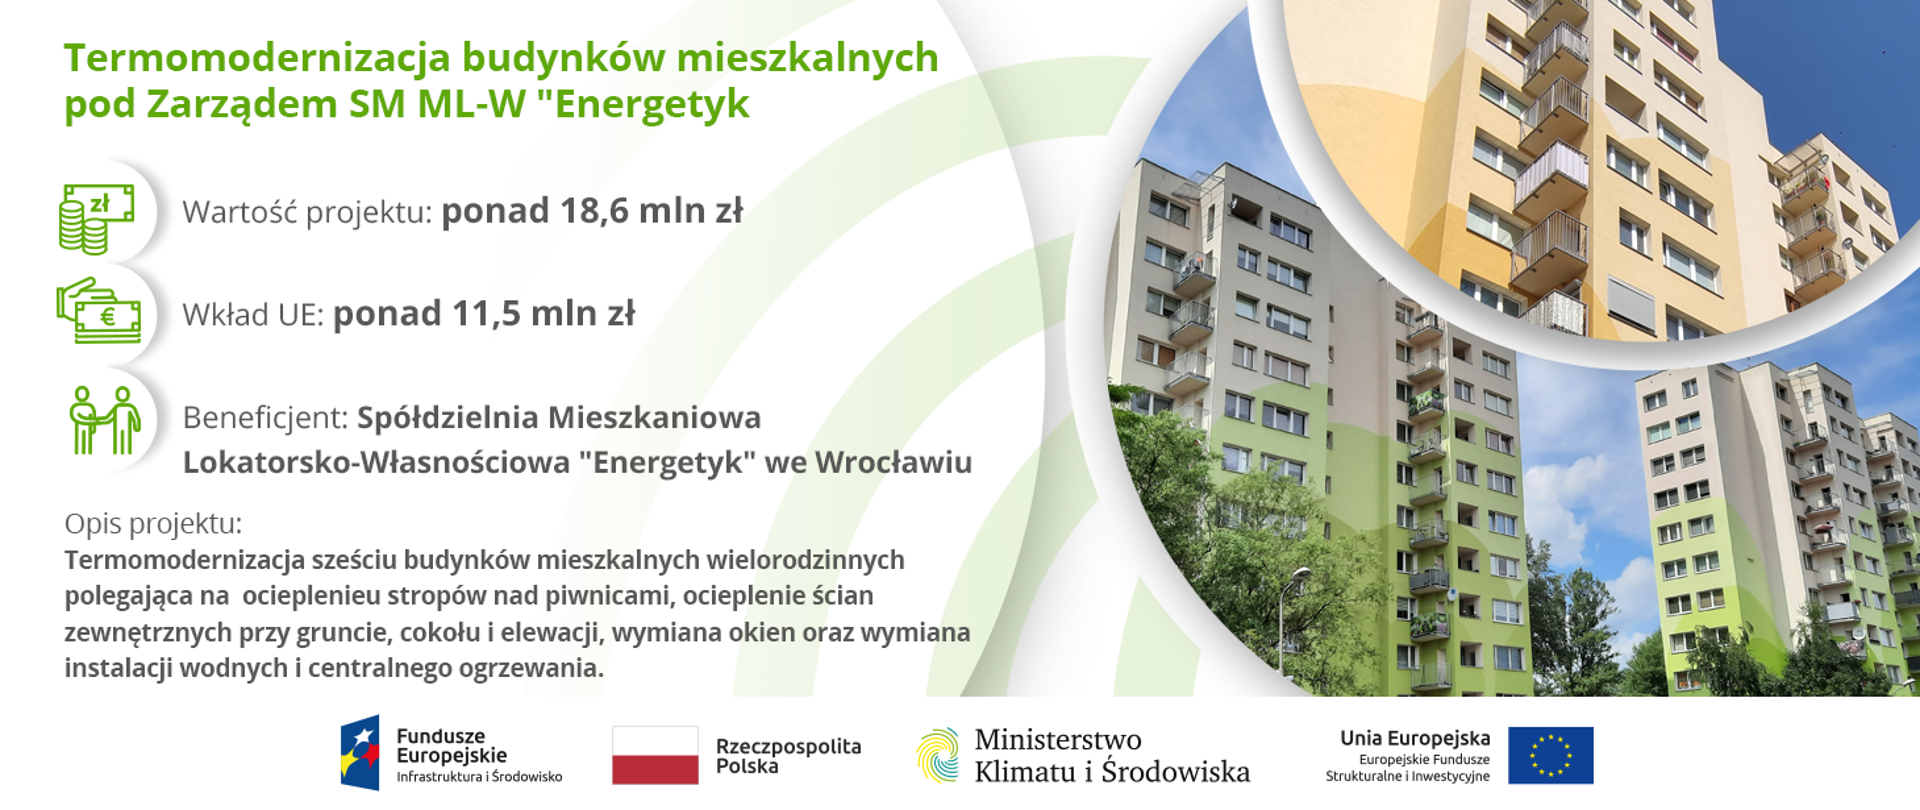 „Termomodernizacja 6 wielorodzinnych budynków mieszkalnych będących pod zarządem Spółdzielni ML-W „Energetyk” we Wrocławiu”